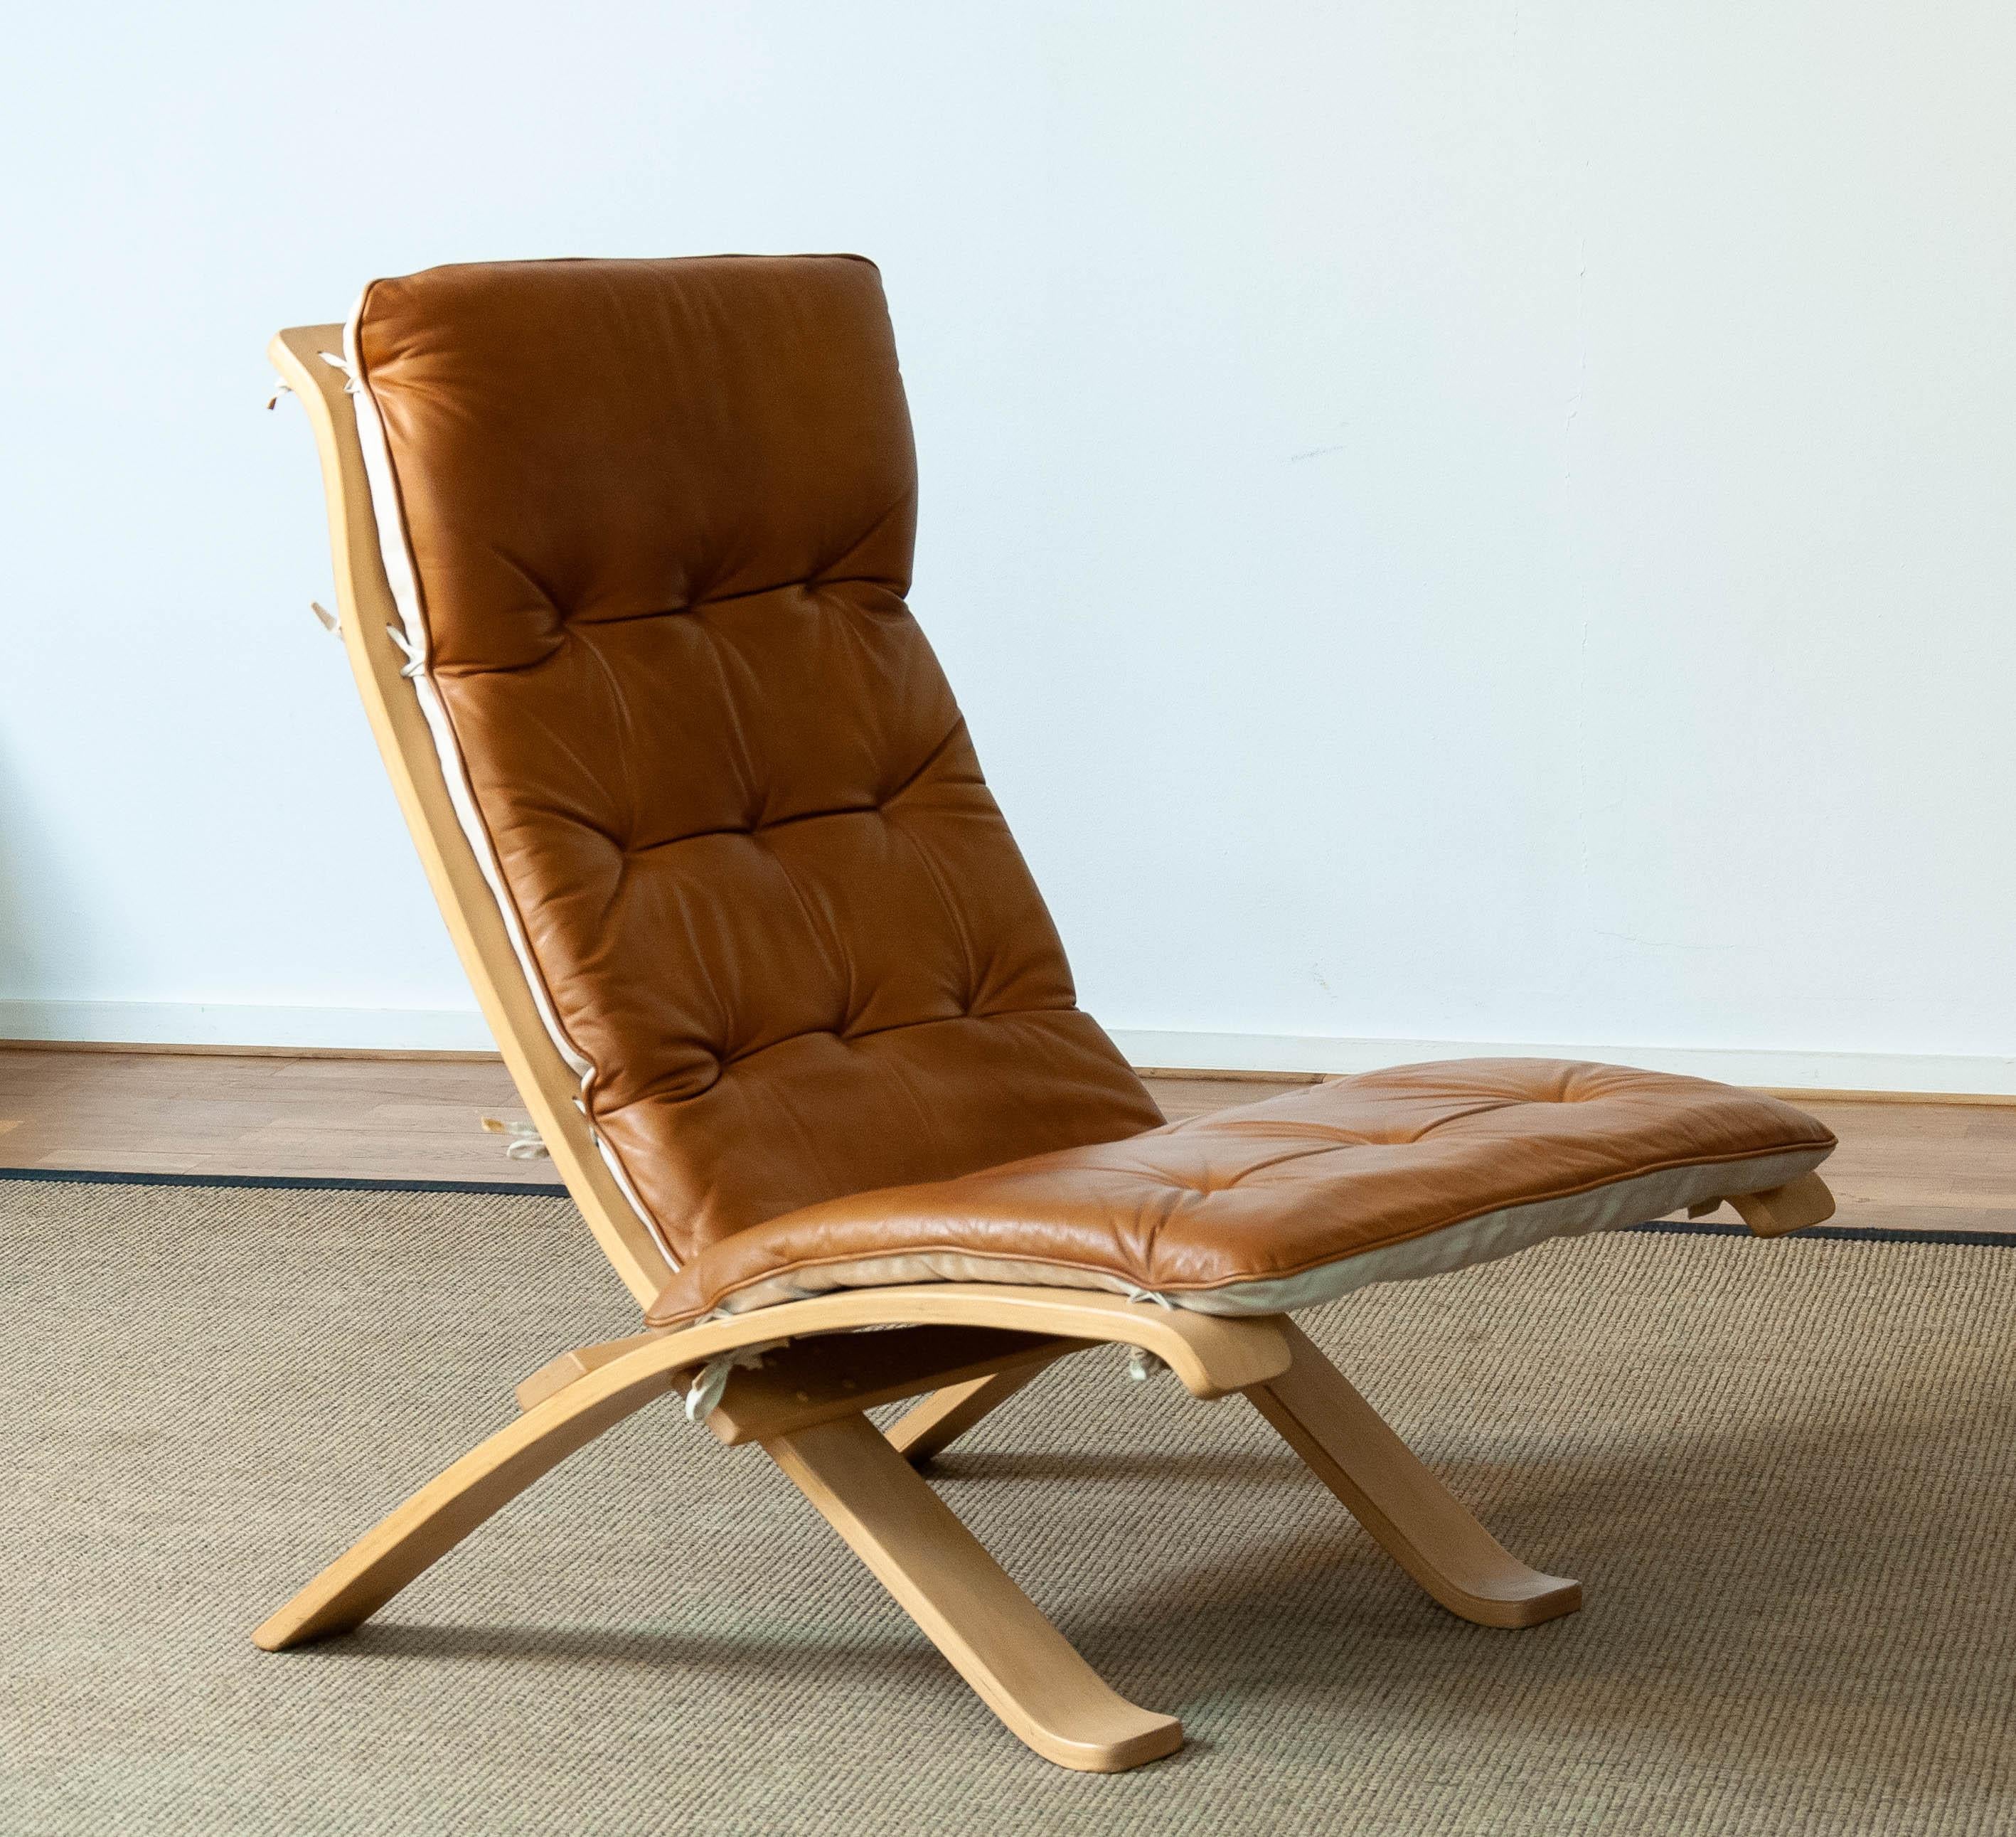 Äußerst seltener Foldes - Loungesessel, entworfen von Åke Fribytter für Nelo Schweden, aus Buche und mit cognacfarbenem Leder gepolstert. Diese fantastische Lösung, einen extrem bequemen Sessel nur bei Bedarf in Ihr Wohnzimmer zu stellen, wurde von